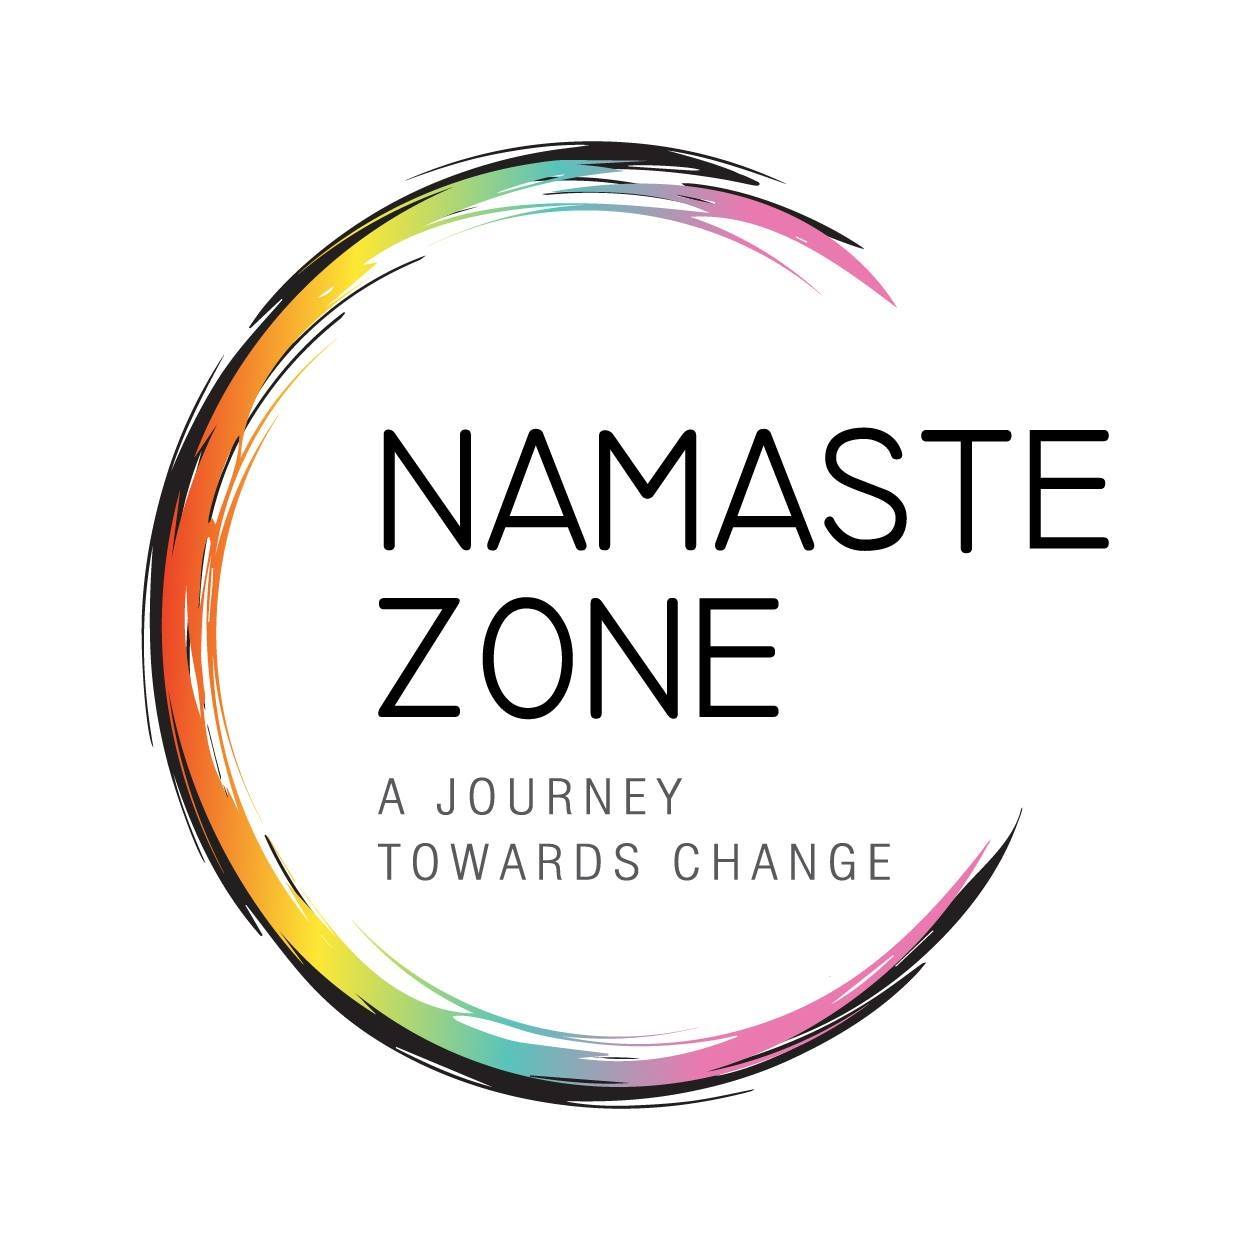 Namaste Zone